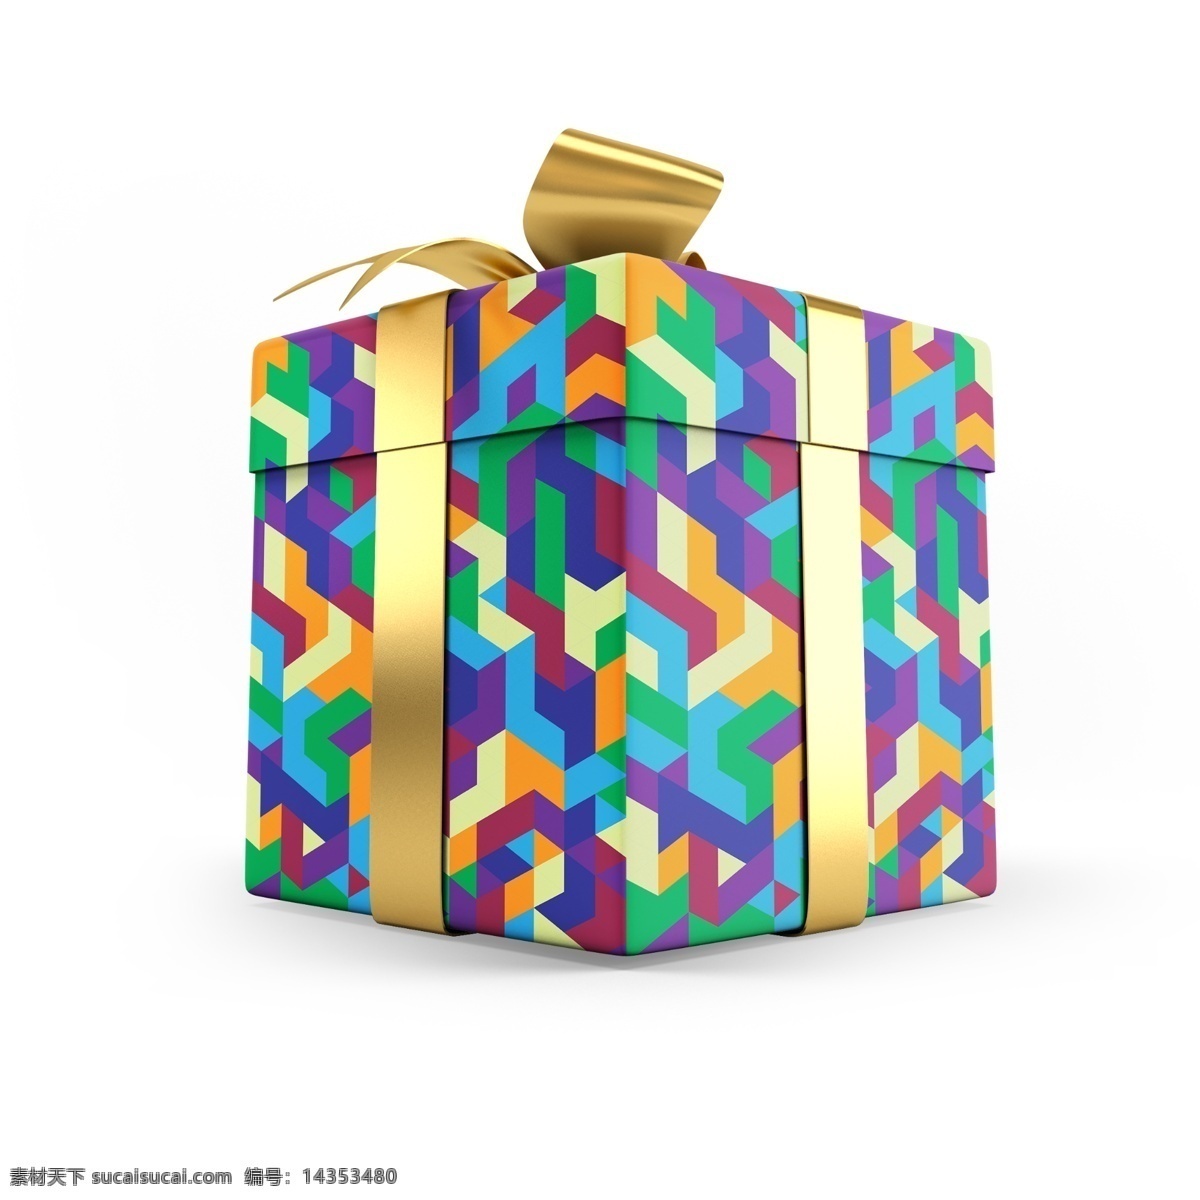 蛋糕盒样机 礼物盒 礼盒 礼盒包装 礼盒颜色 礼物盒装饰 礼物盒效果 礼物盒展示 包装 礼物 礼物盒包装 样机 产品效果图 vi设计